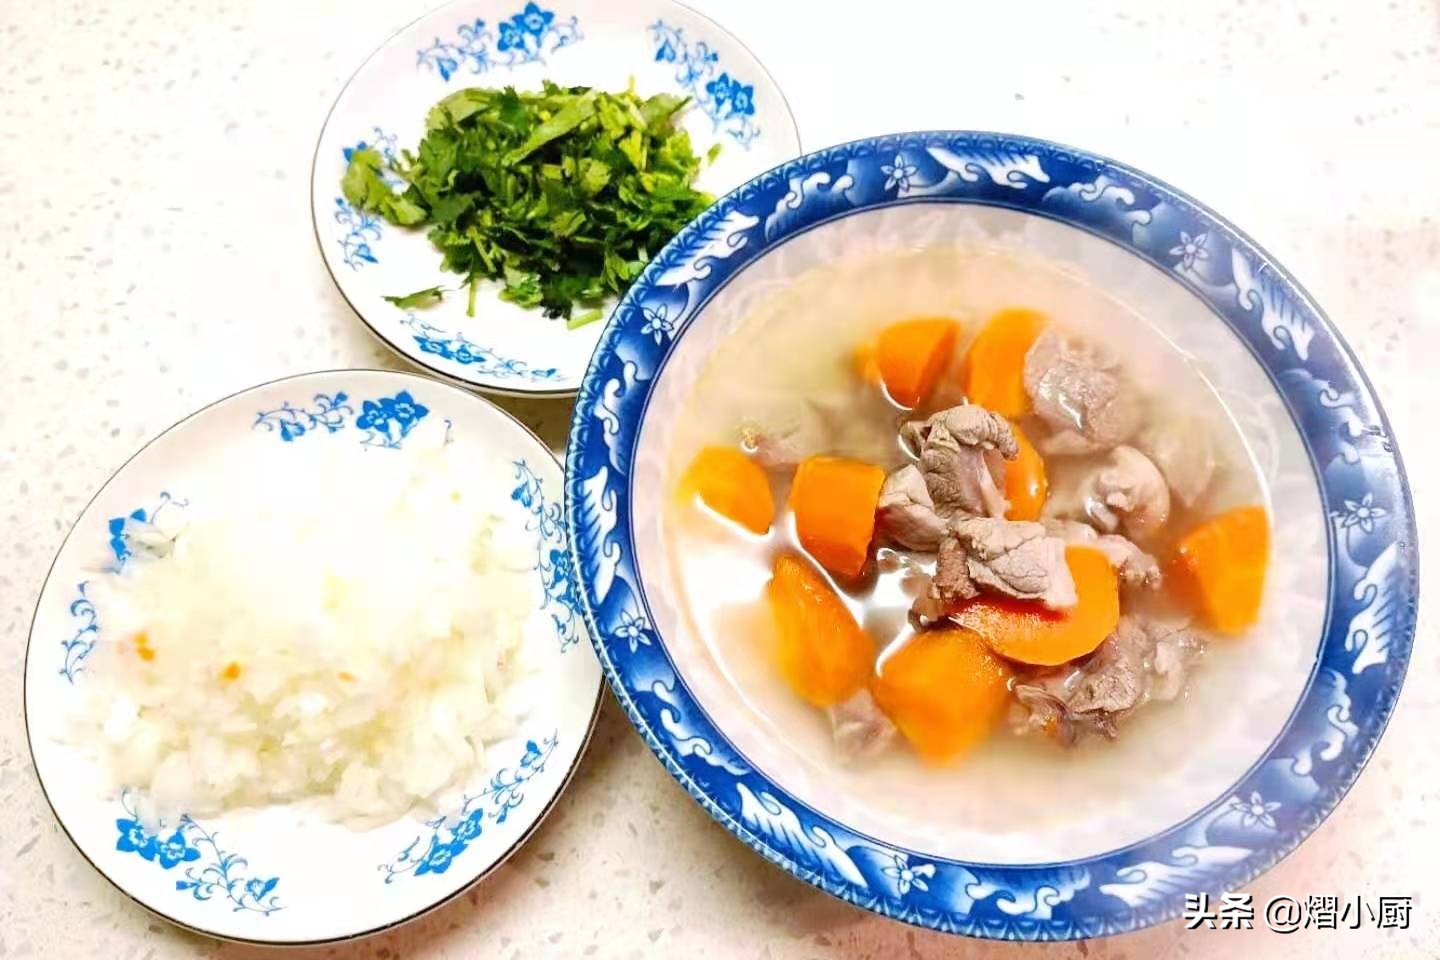 羊肉萝卜汤，味美做法简单，只加1种调味料，做好后肉香汤清好喝